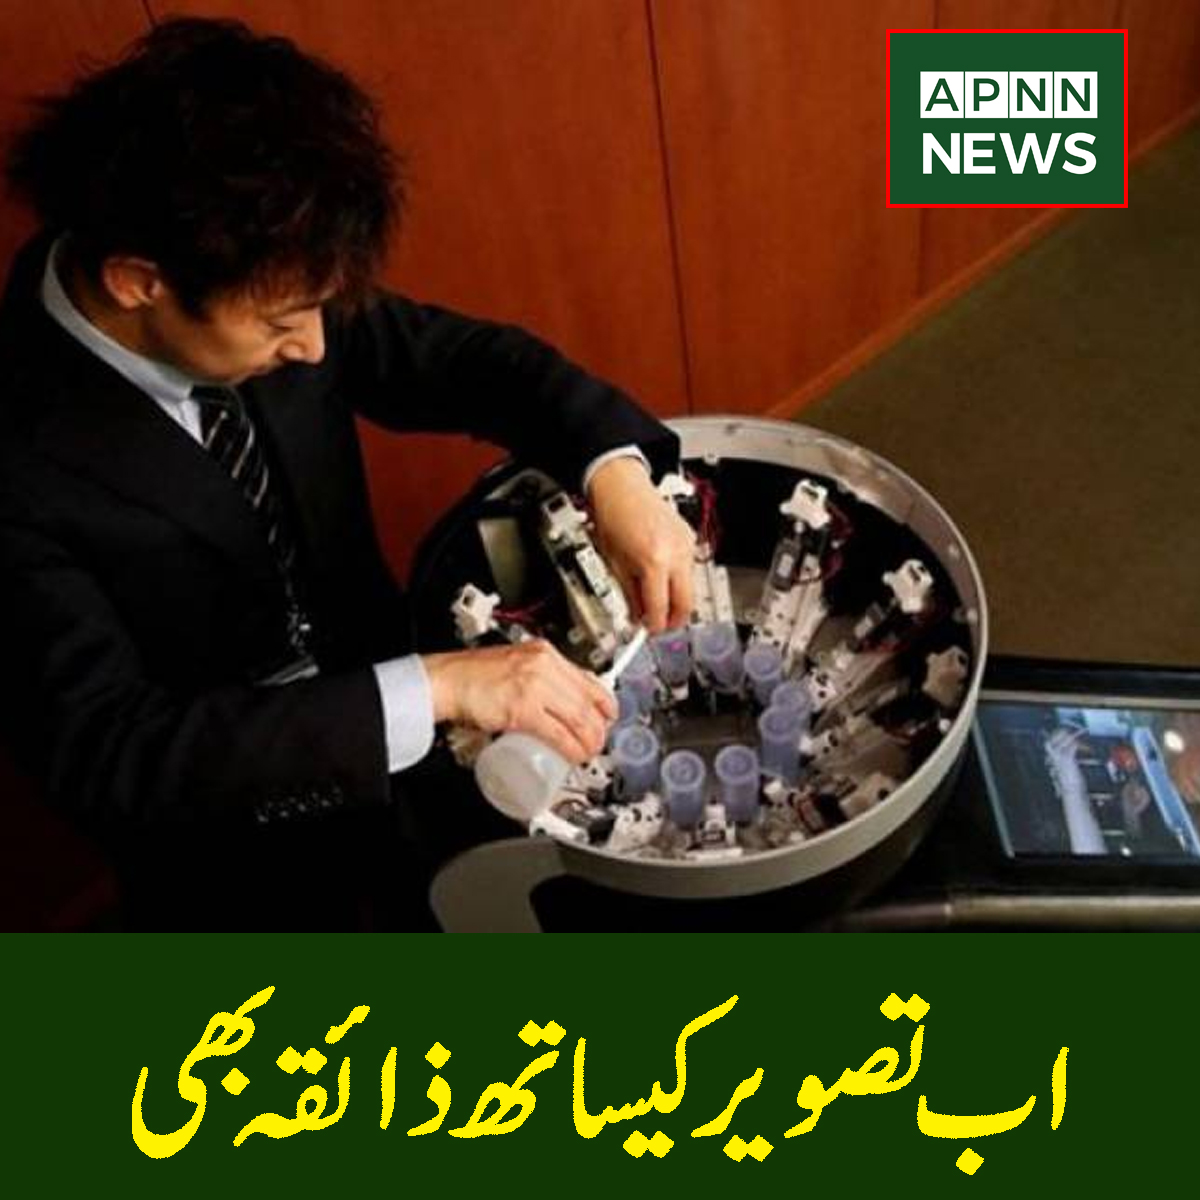 ’ٹیسٹ دی ٹی وی‘۔۔اب تصویر کیساتھ ذائقہ بھی سکرین پر

خبر کی تفصیل :bit.ly/3ej5iU1

#APNN #Pakistan #TastetheTV